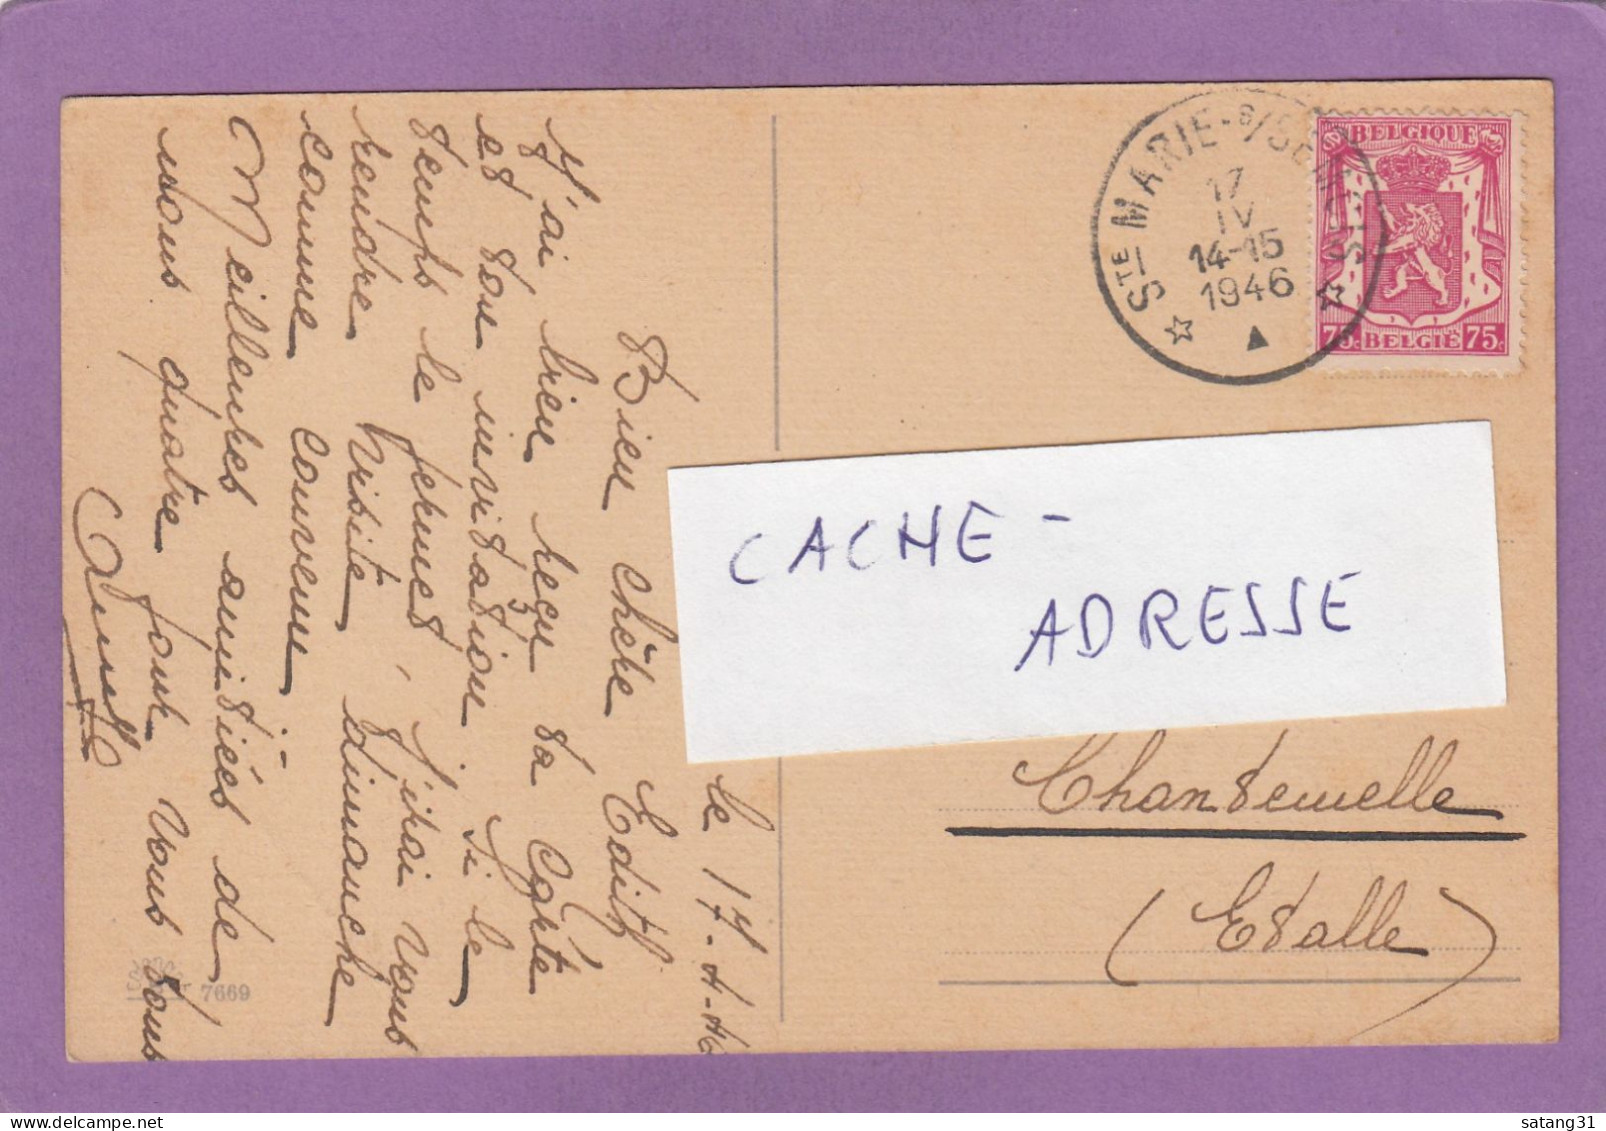 CARTE POSTALE DE SAINTE MARIE SUR BSEMOIS POUR CHANTENELLE,1946. - Briefe U. Dokumente